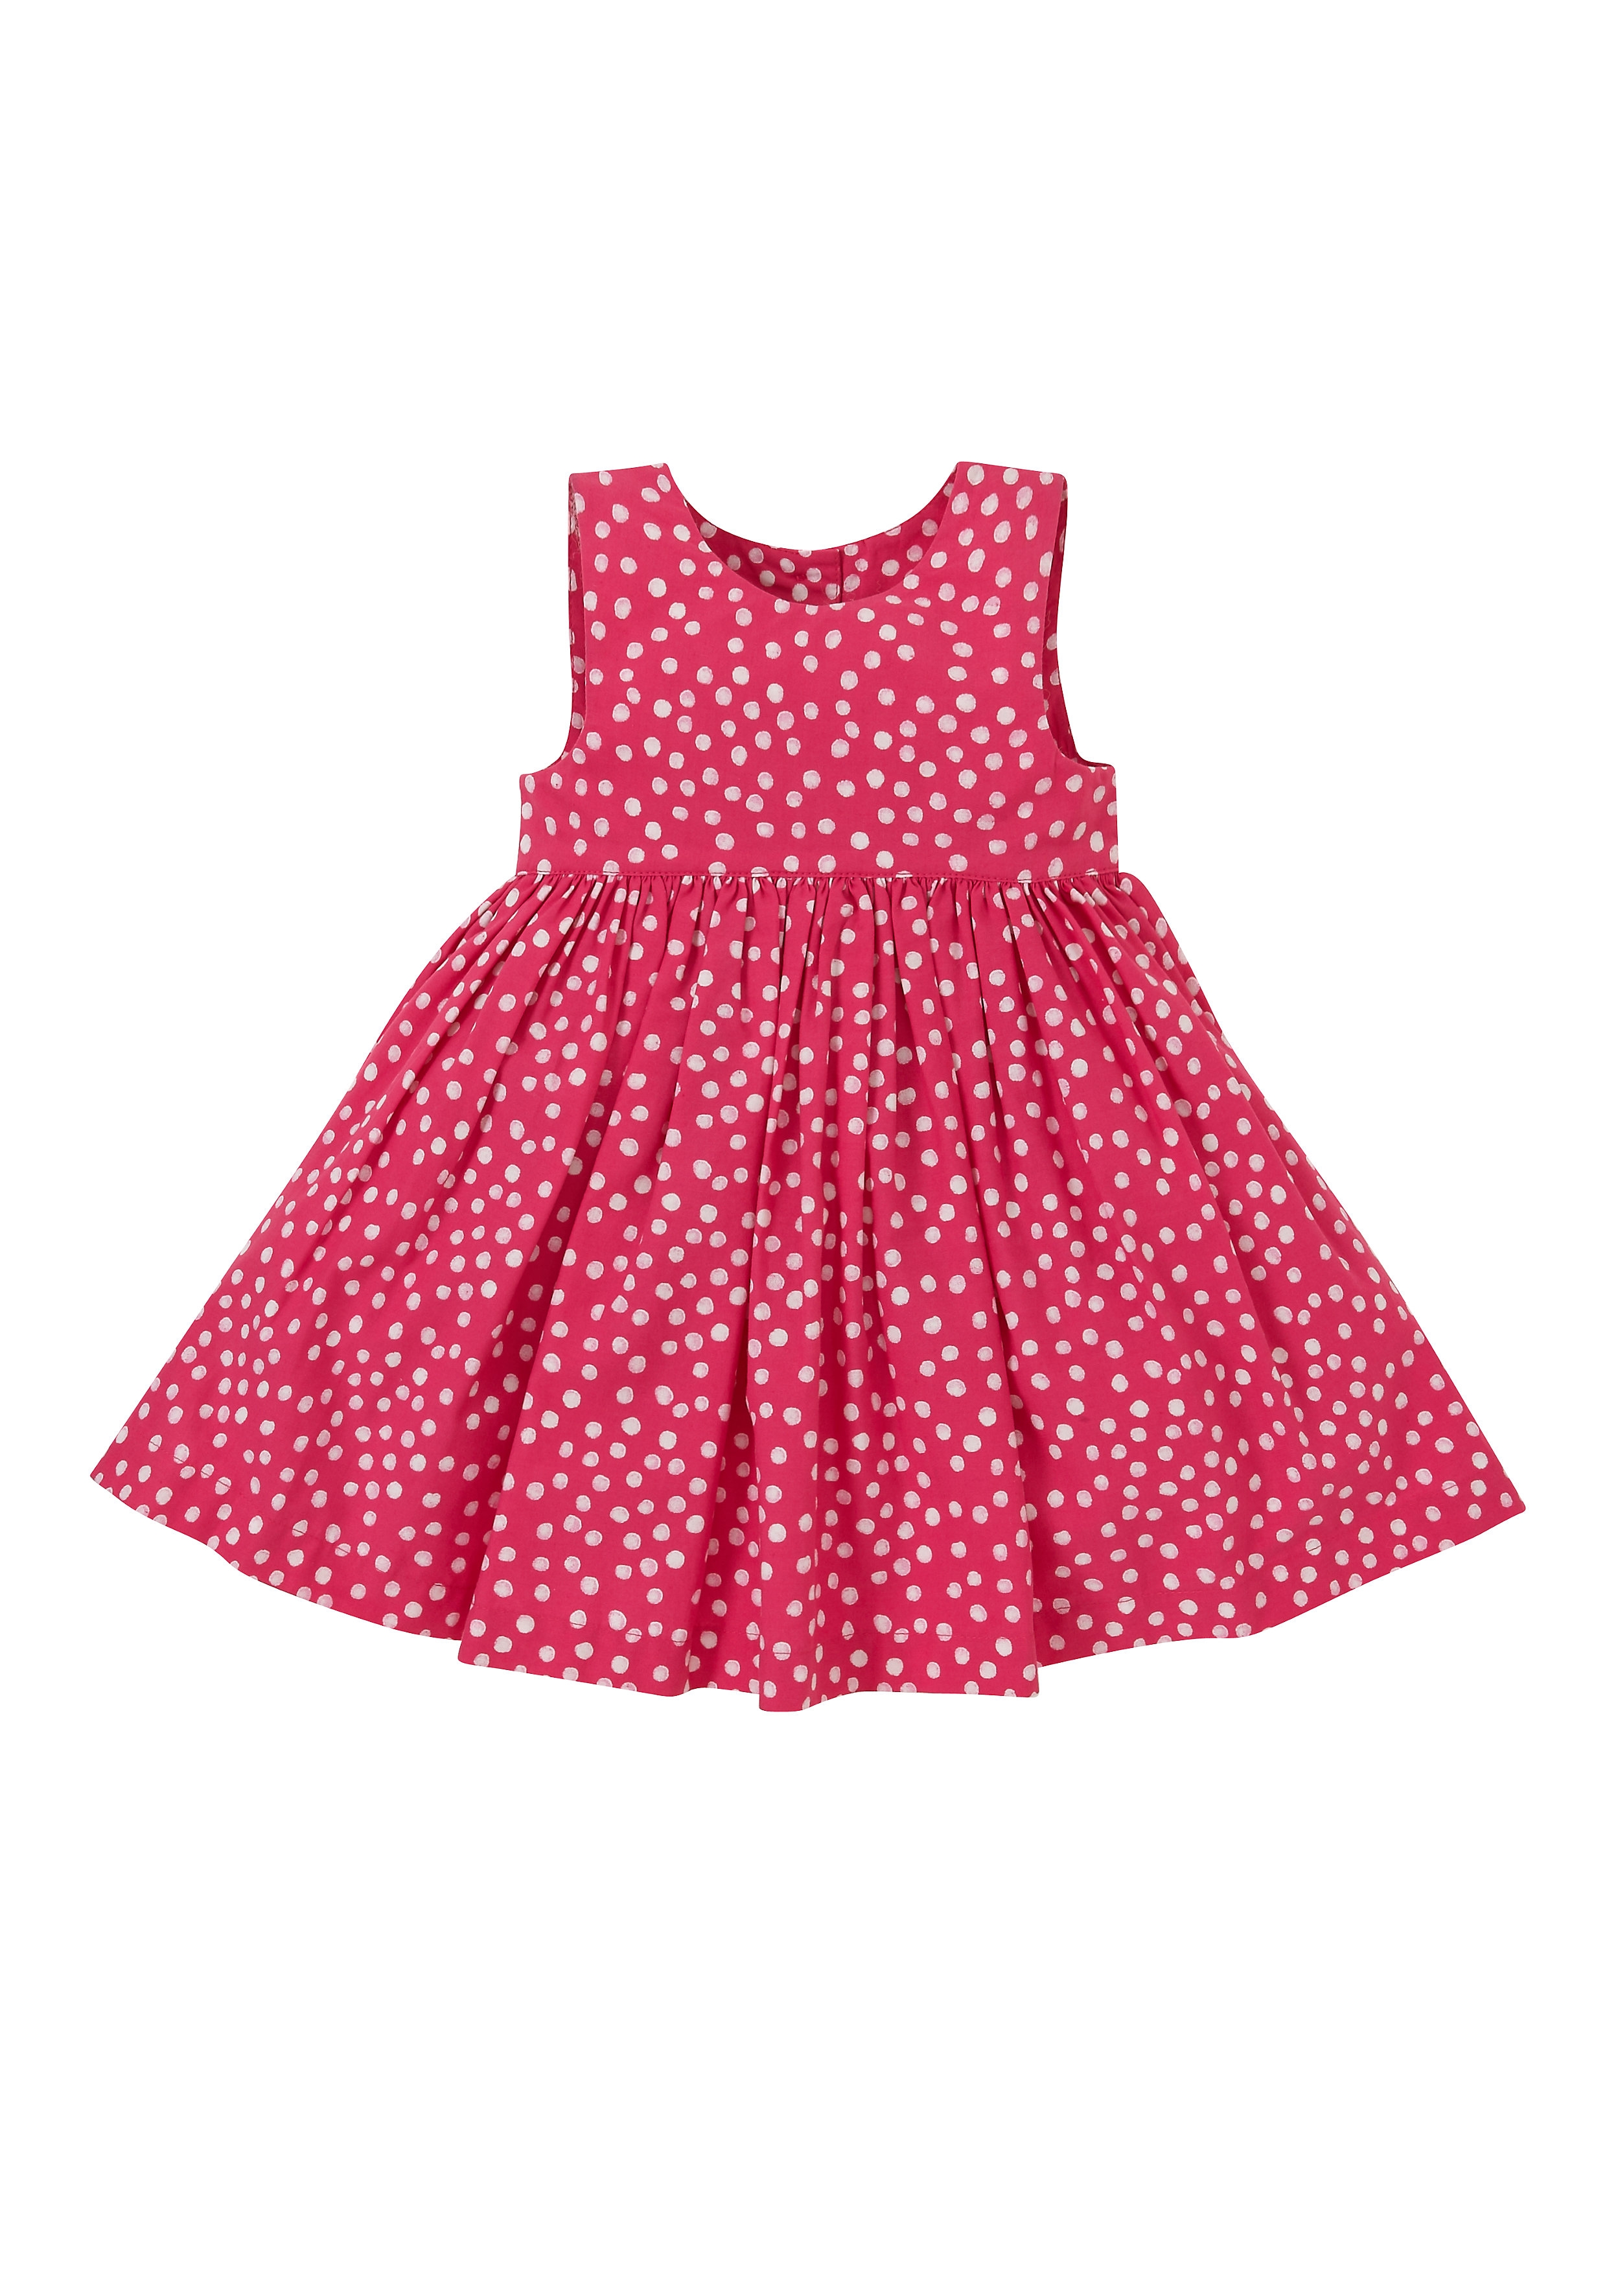 Mothercare | Girls Sleeveless Dress Polka Dot Print - Red